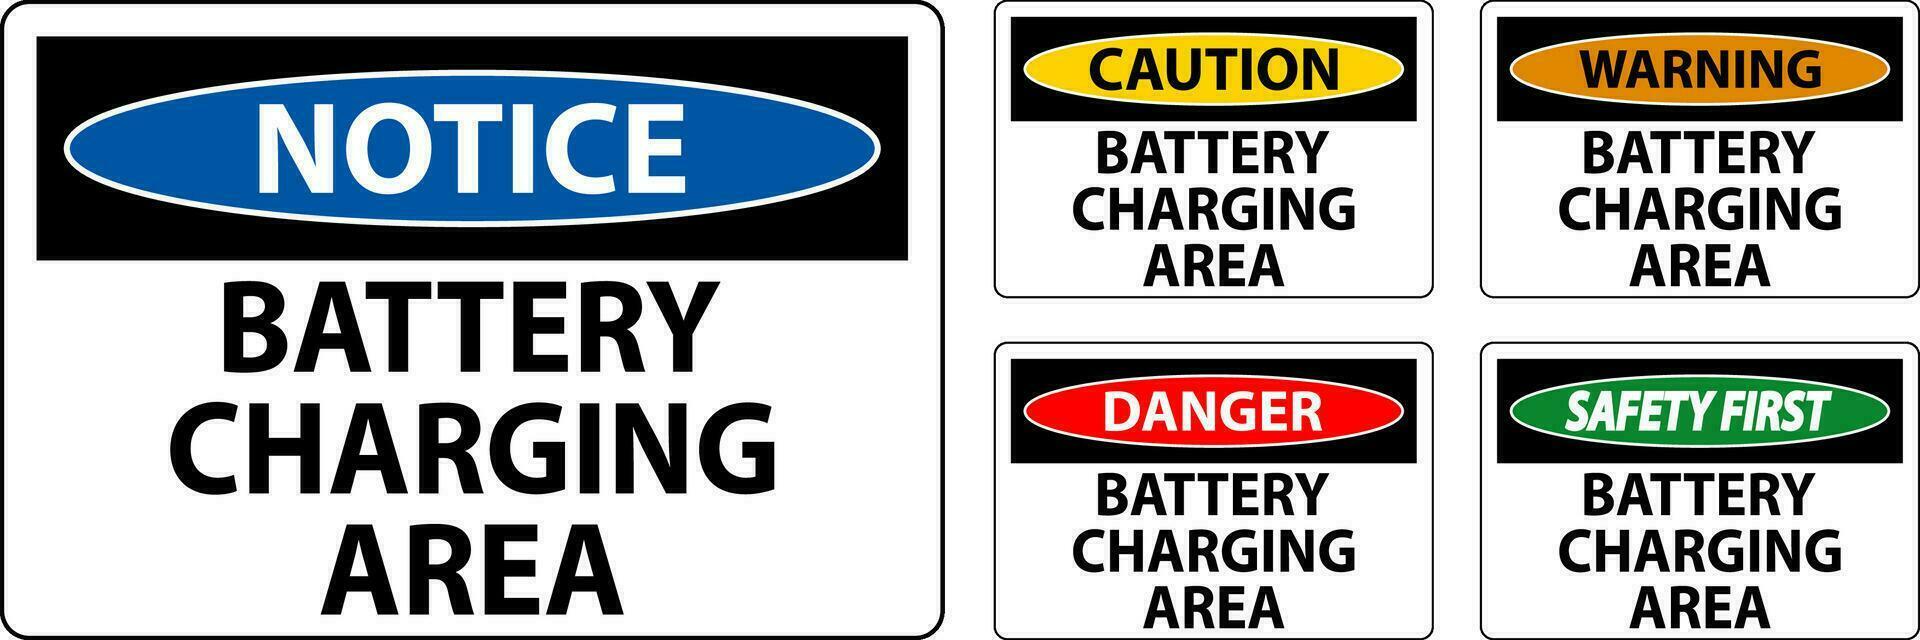 varning tecken batteri laddning område på vit bakgrund vektor